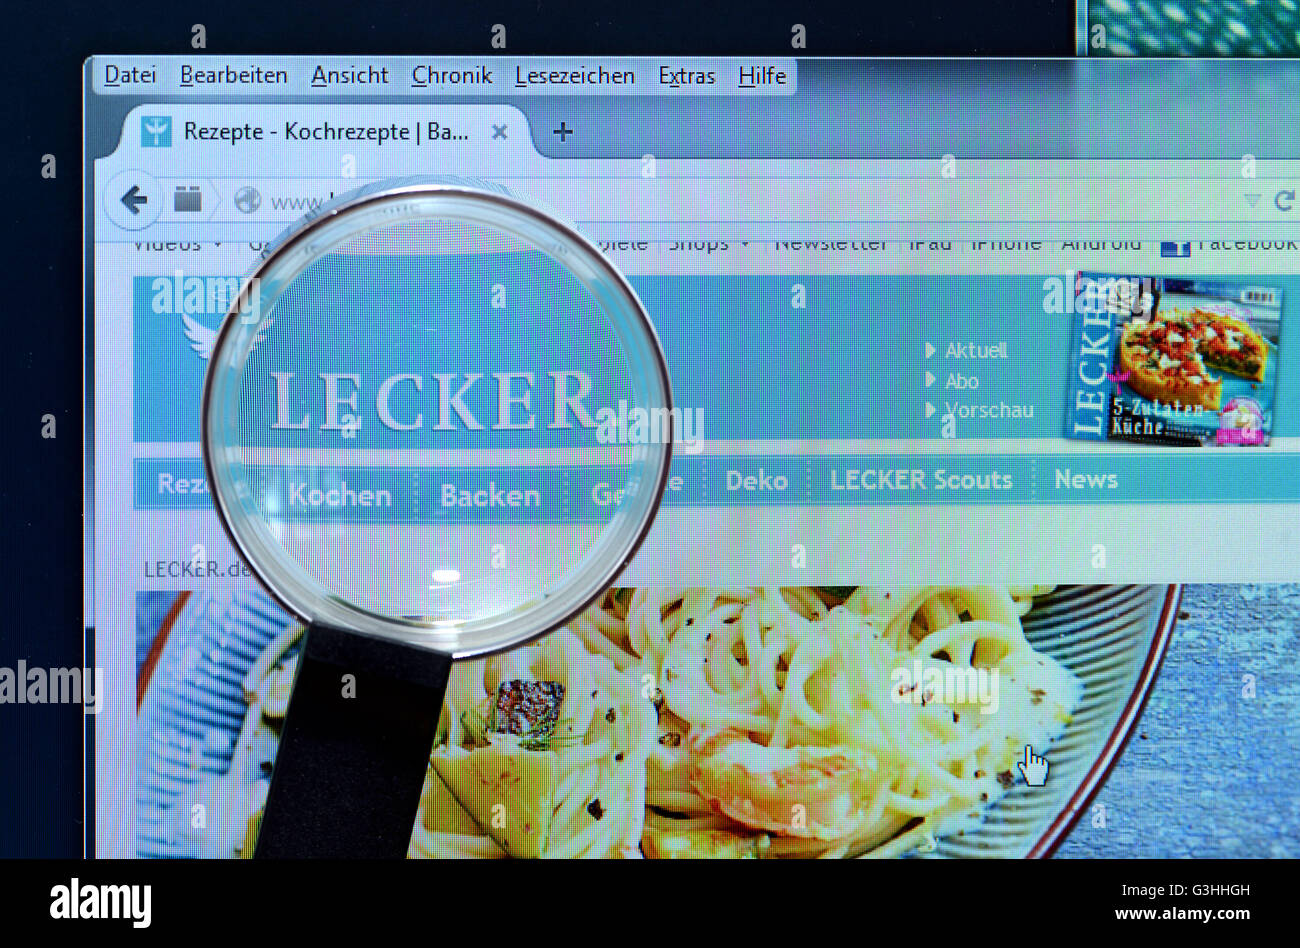 lecker.de, homepage, Internet, Bildschirm Stock Photo